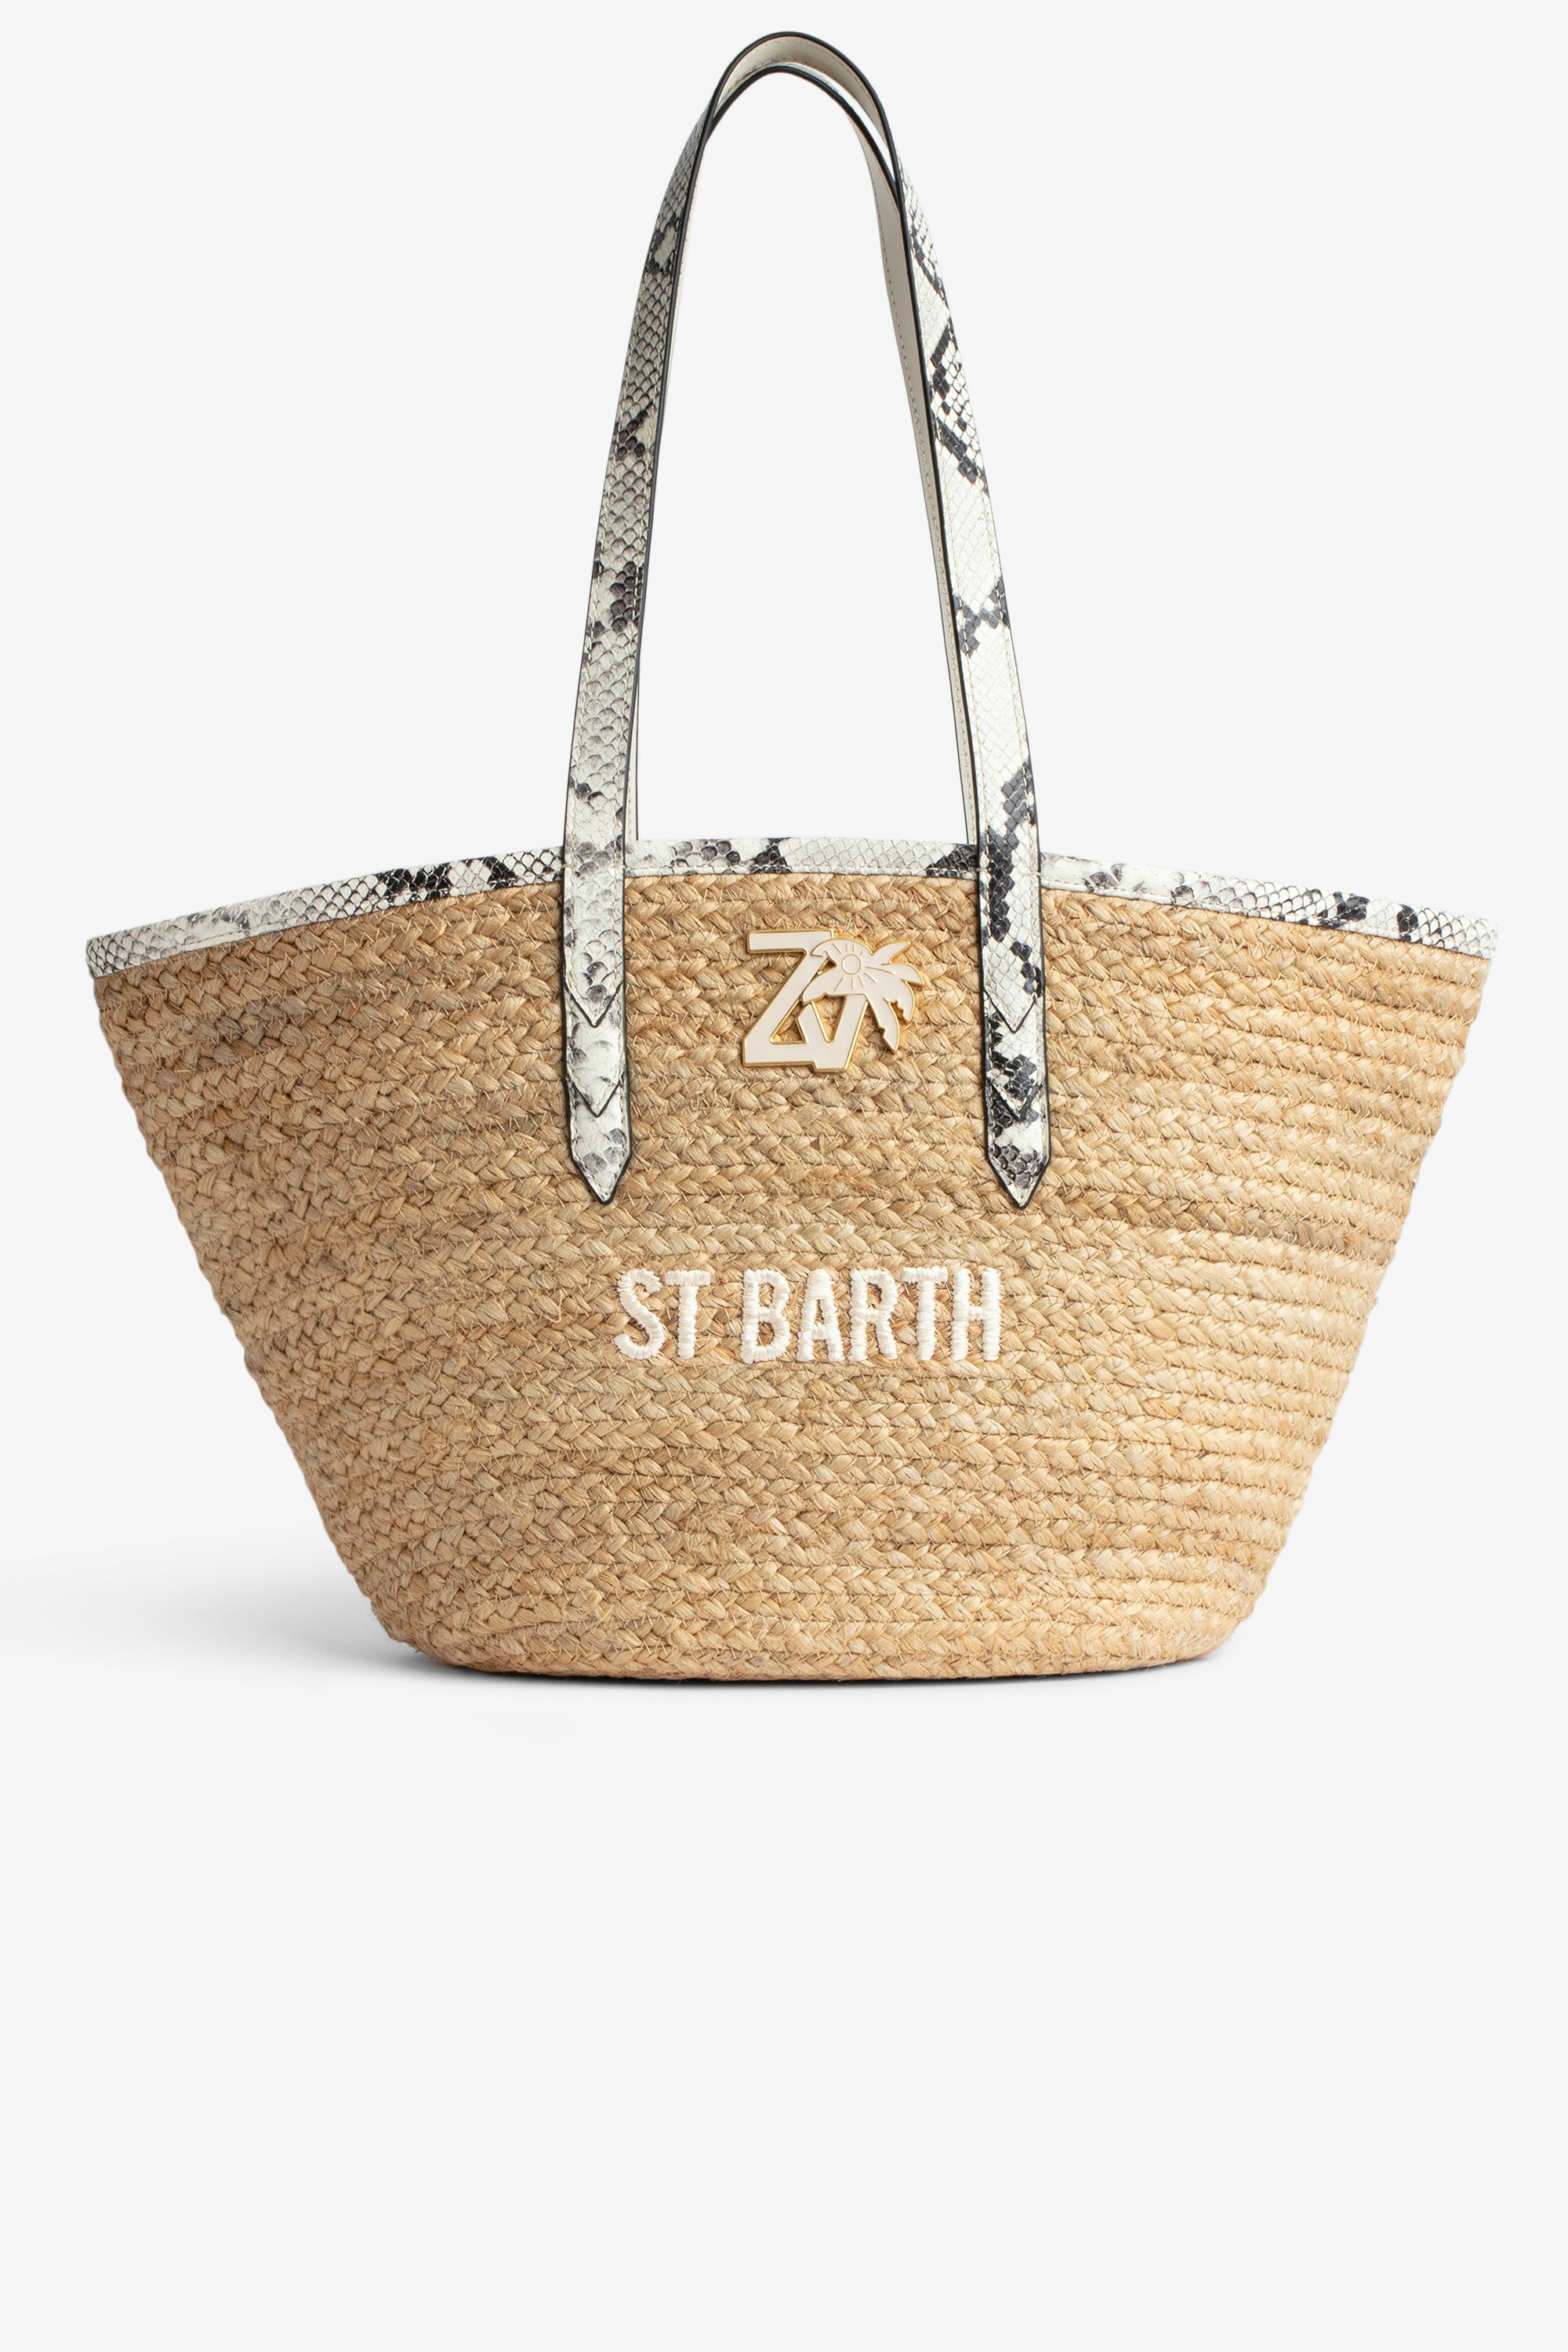 Tasche Le Beach Bag Damen-Strohtasche mit Henkeln aus ecrufarbenem Leder in Python-Optik, „St Barth“-Stickerei und ZV-Charm